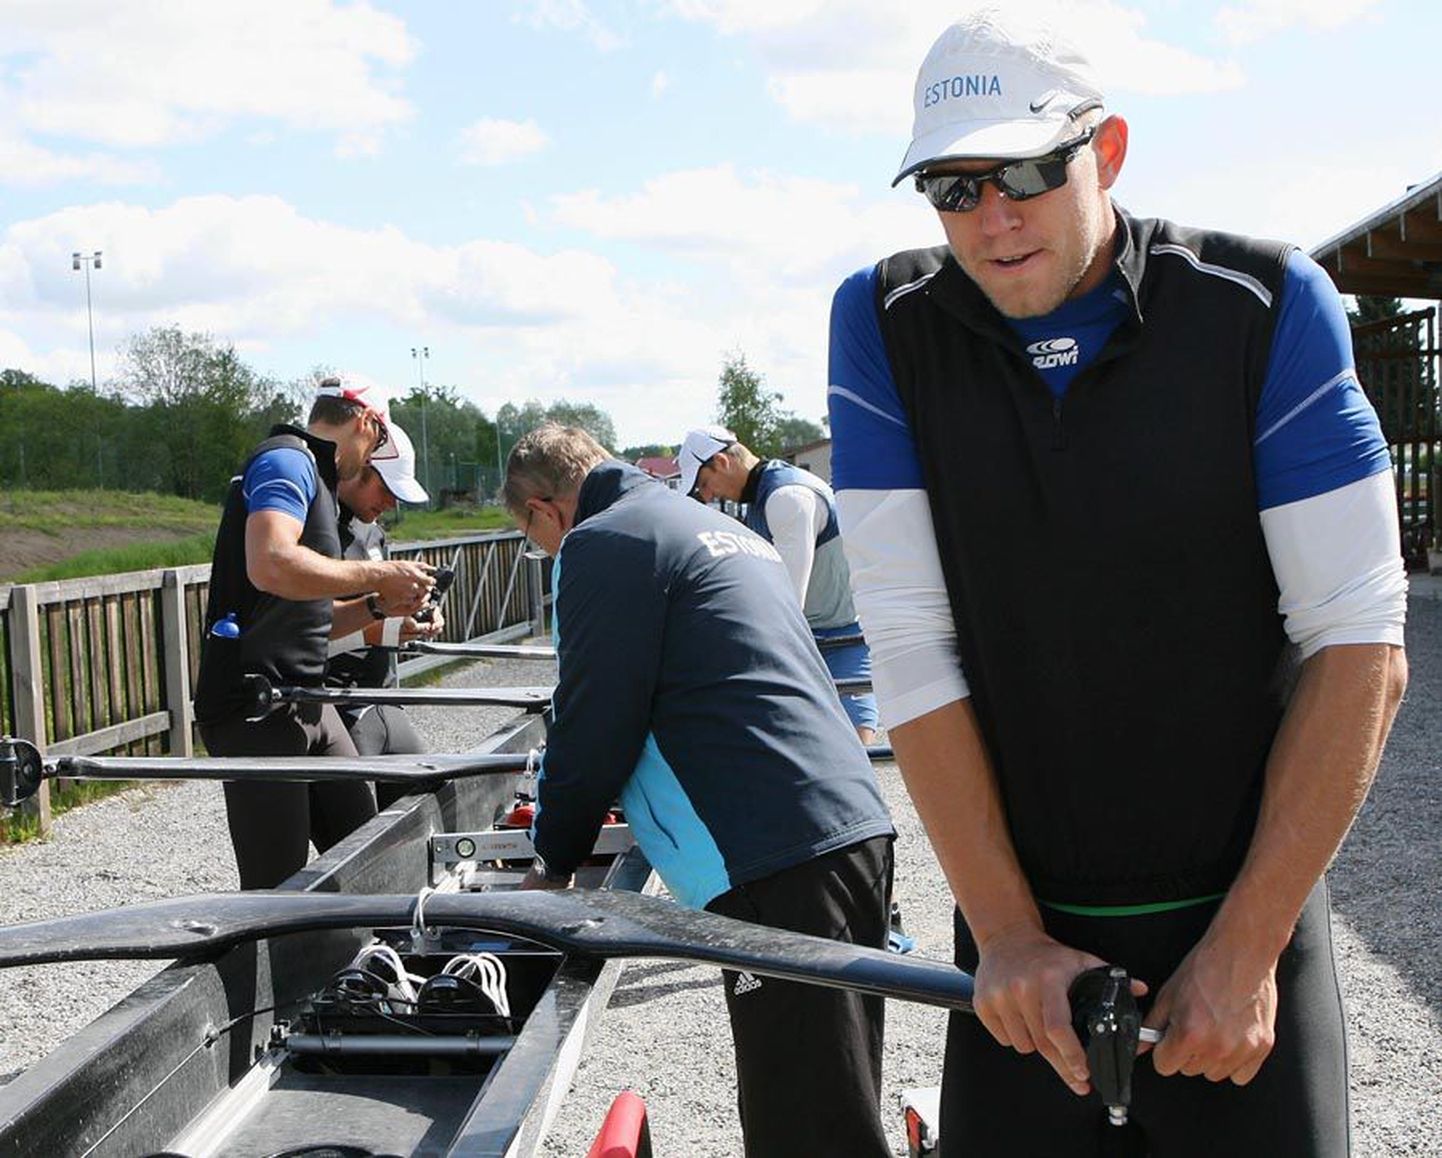 Olümpiamängudeks valmistuvad Eesti sõudekoondise neljapaadi mehed  askeldasid eile sõudeellingu taga paatide kallal. Nädala treenib koondis Viljandi järvel.